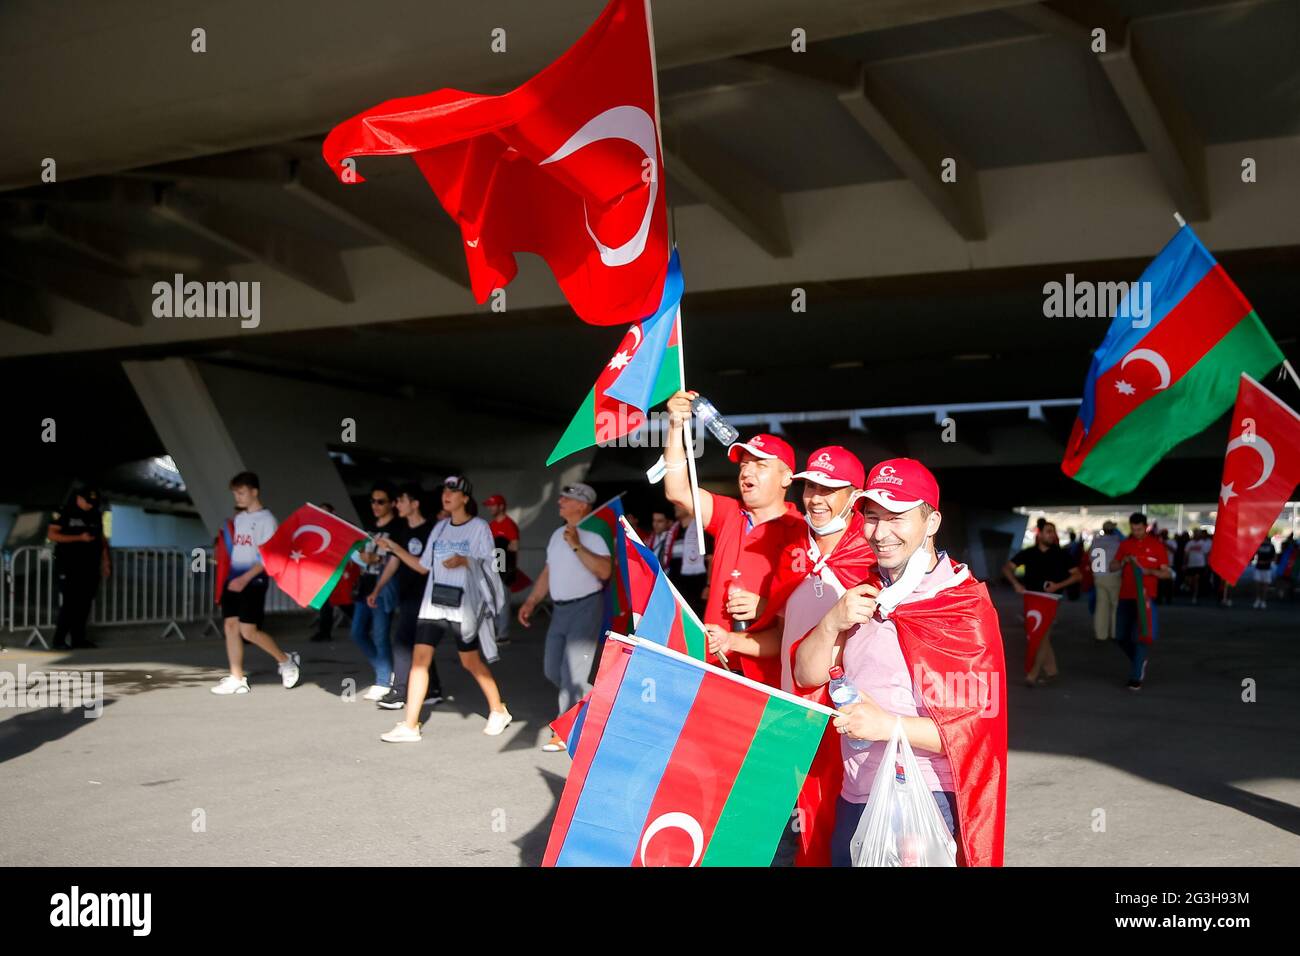 Tifosi turchi fuori terra davanti alla partita UEFA Euro 2020 Gruppo A allo Stadio Olimpico di Baku in Azerbaigian. Data immagine: Mercoledì 16 giugno 2021. Foto Stock